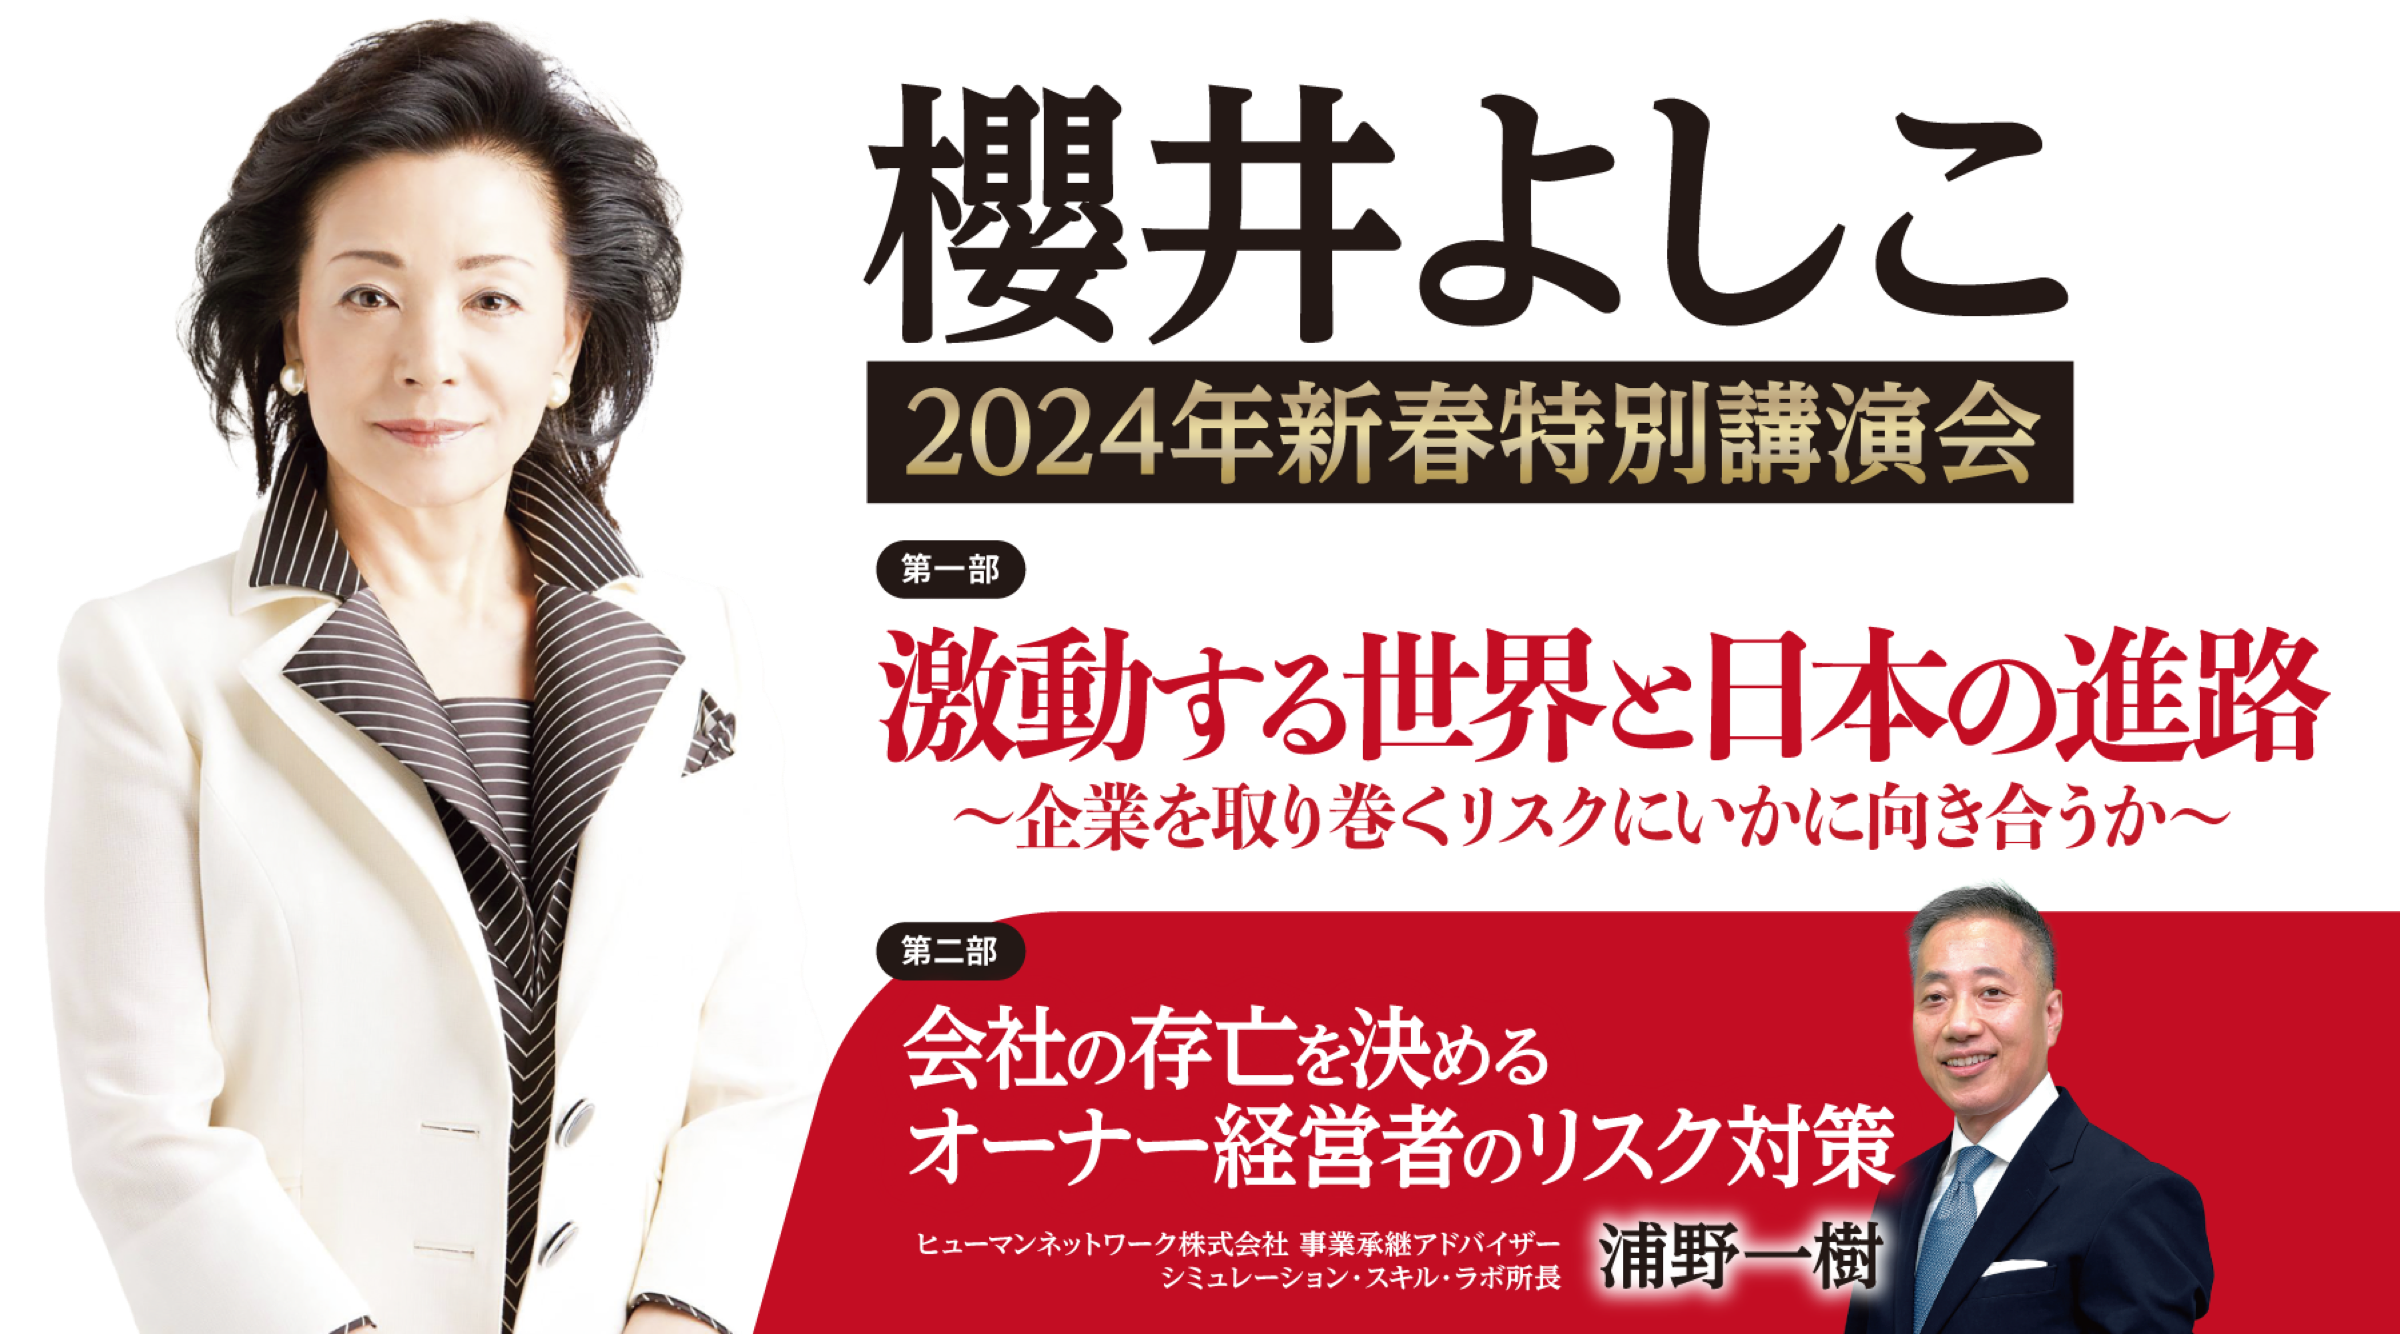 櫻井よしこ 2024年新春特別講演会 ー激動する世界と日本の進路ー